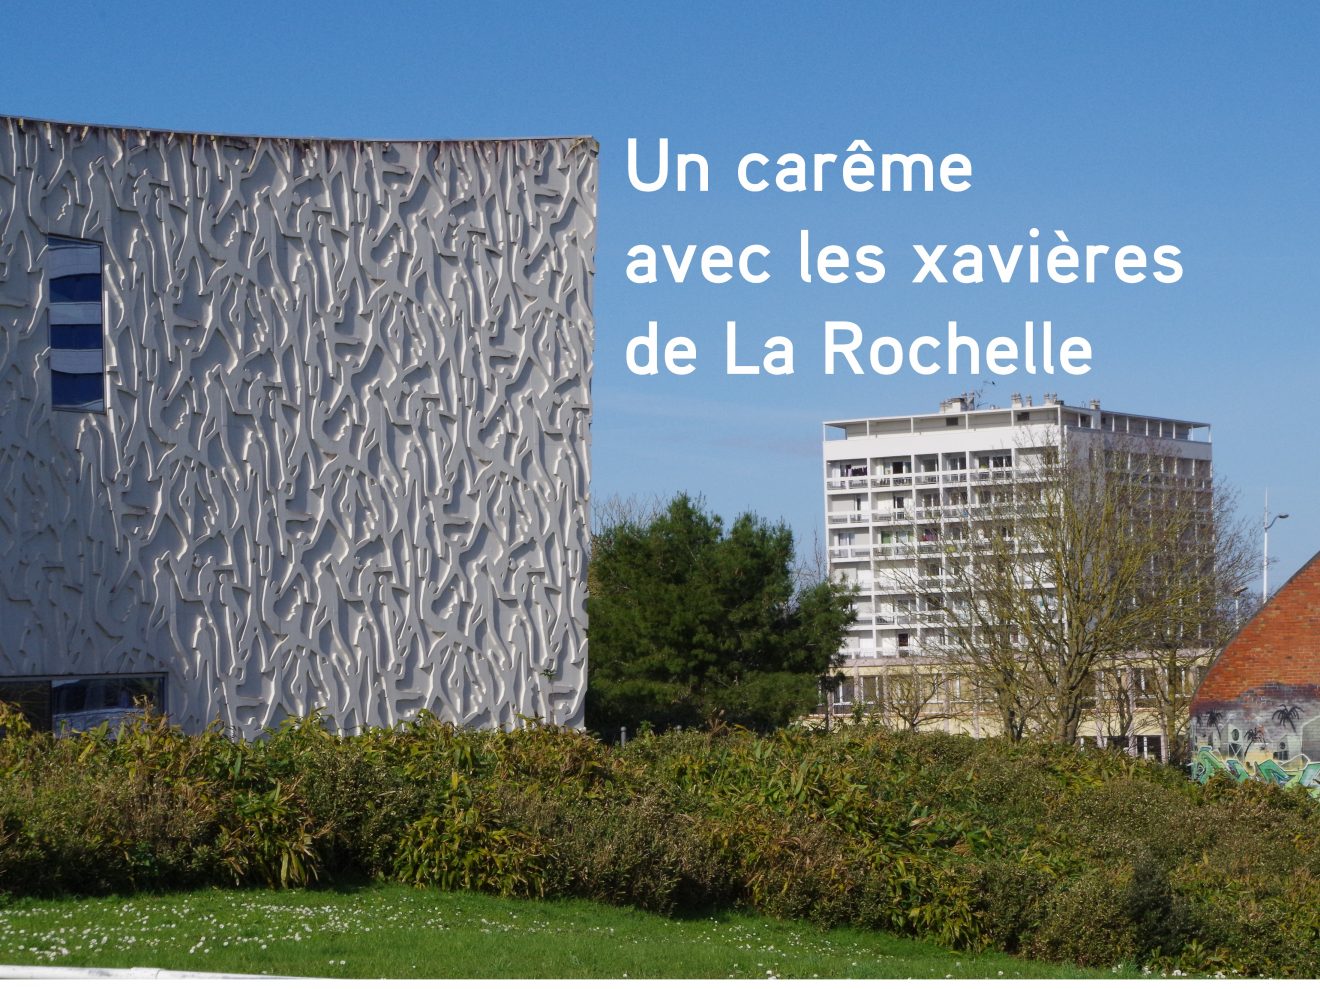 Un carême avec les xavières de La Rochelle sur RCF